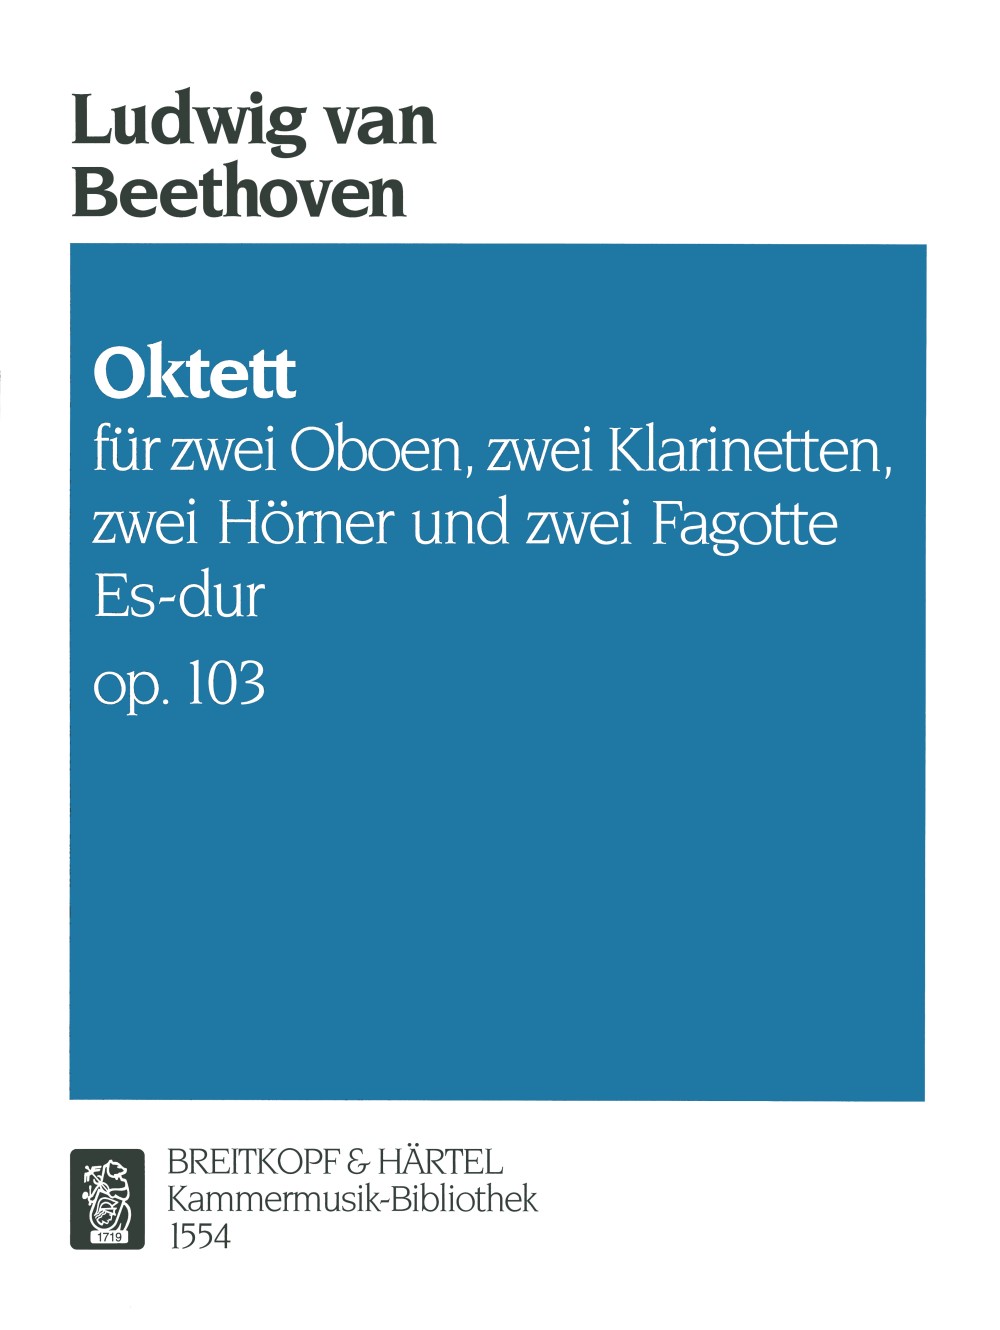 Beethoven: Octet in E-flat Major, Op. 103